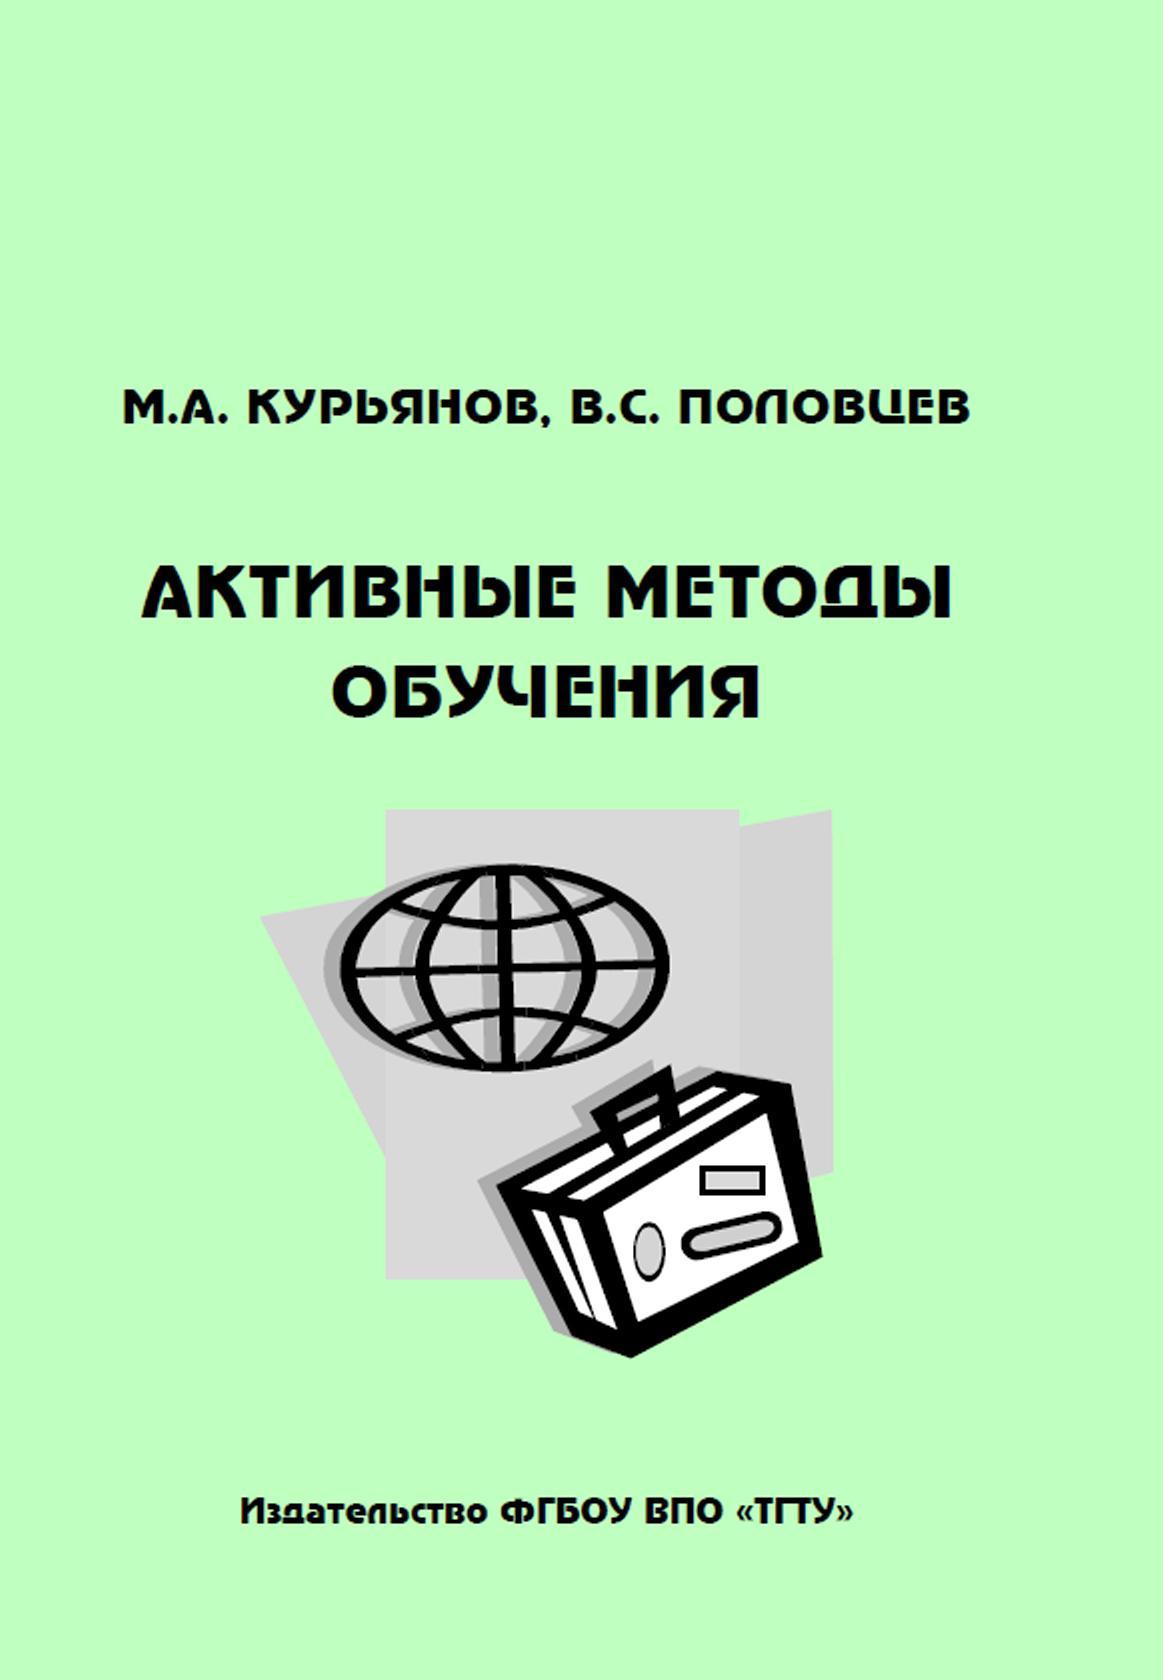 Активные методы обучения, Методическое пособие, Курьянов М.А., Половцев В.С., 2012